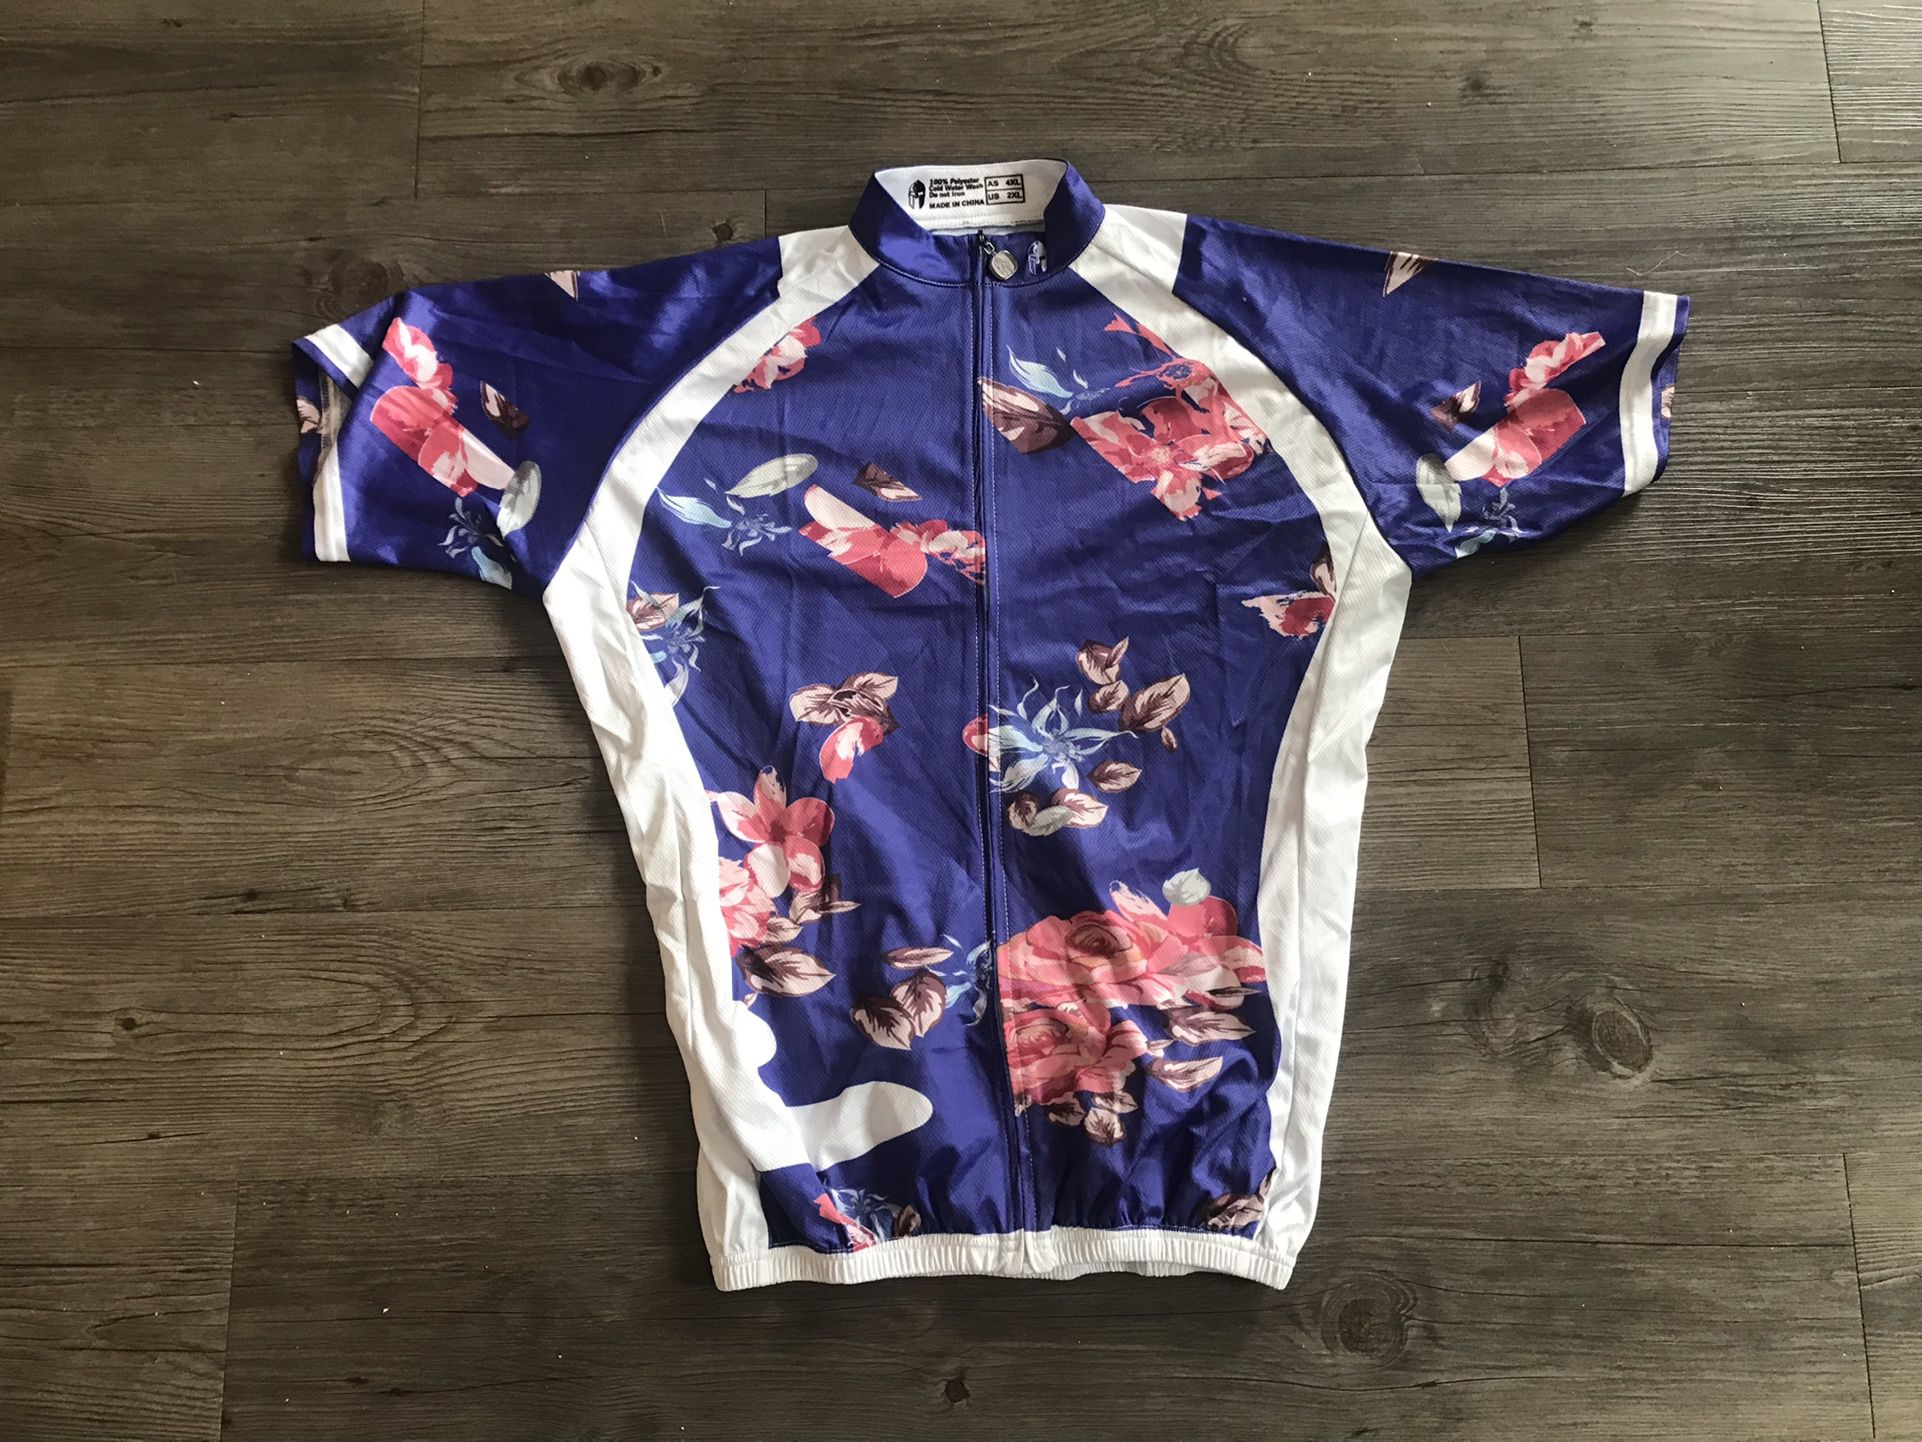 Women’s Paladin Cycling Jersey - 2X